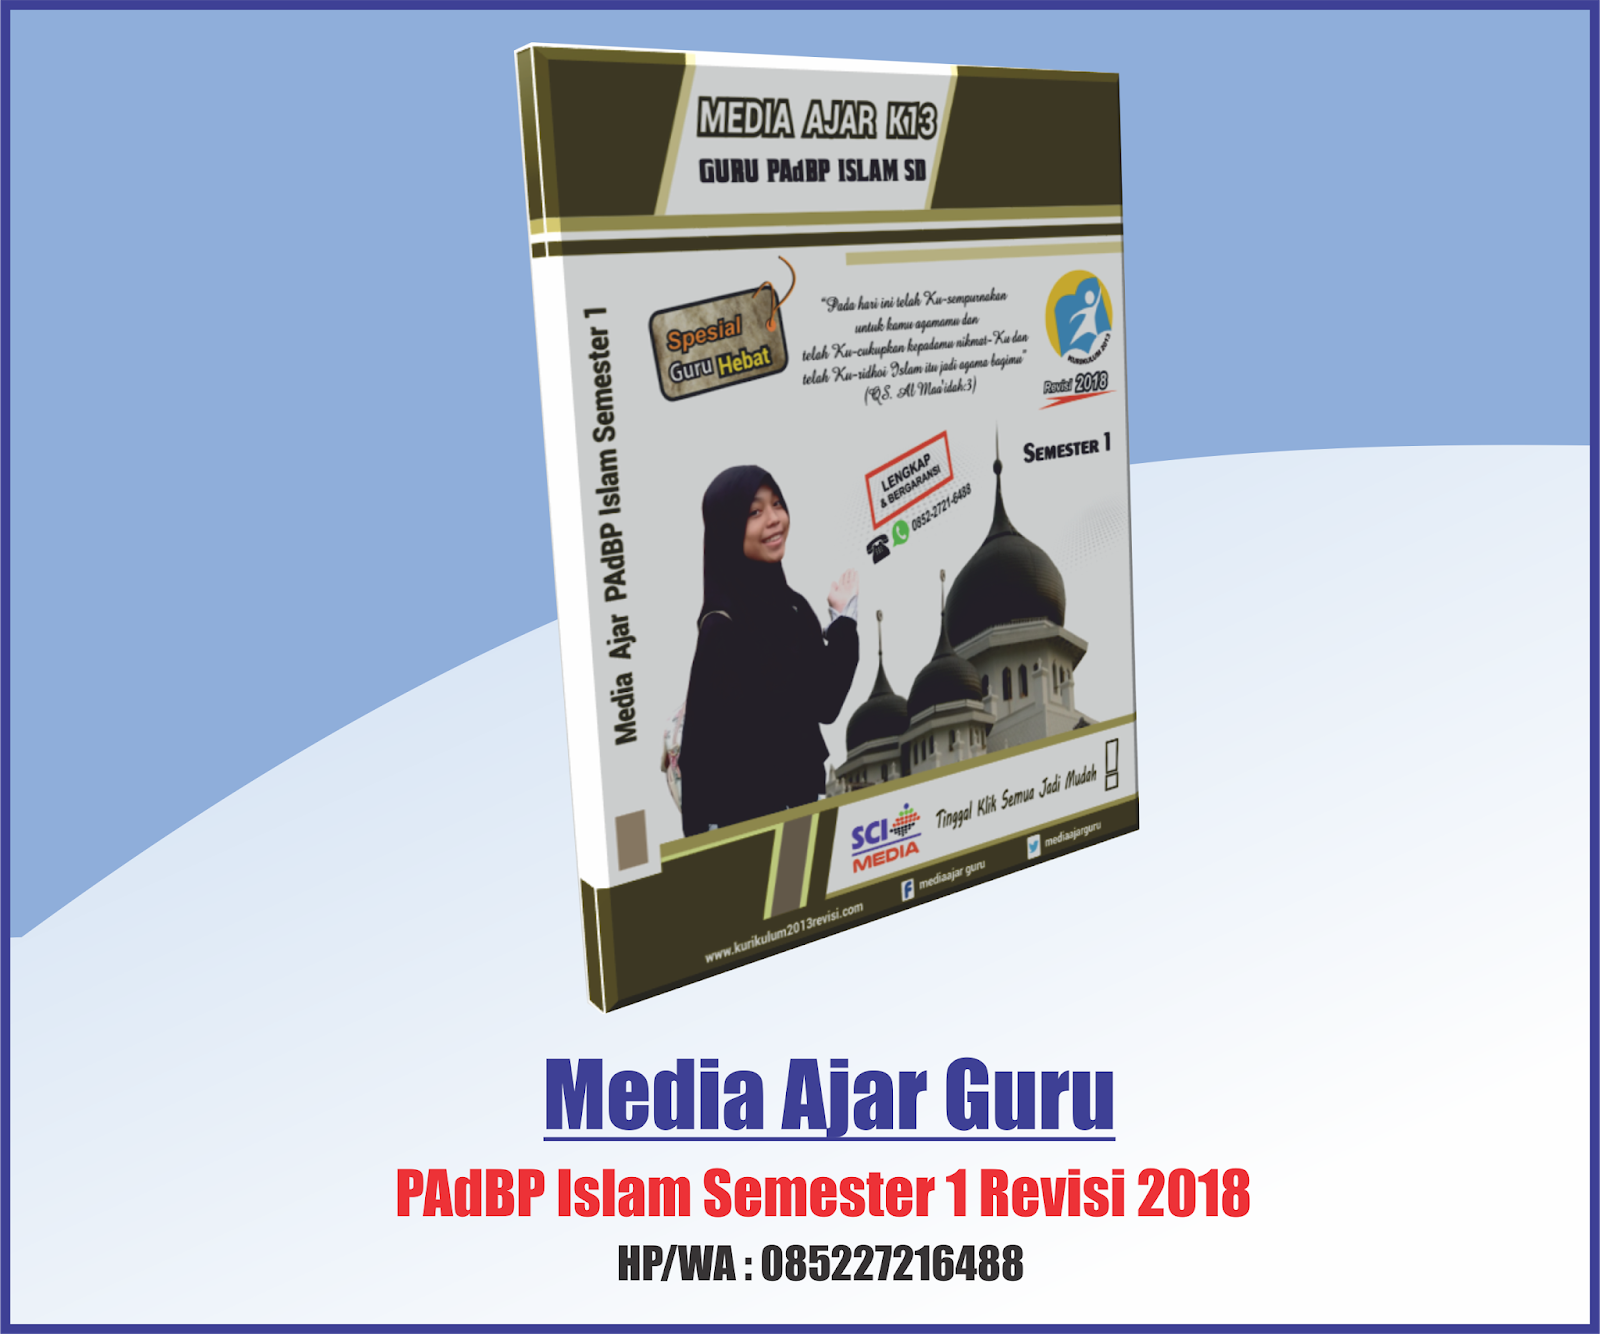 APLIKASI MEDIA AJAR GURU PAdBP ISLAM SEMESTER 1 REVISI 2018 UNTUK SD MI